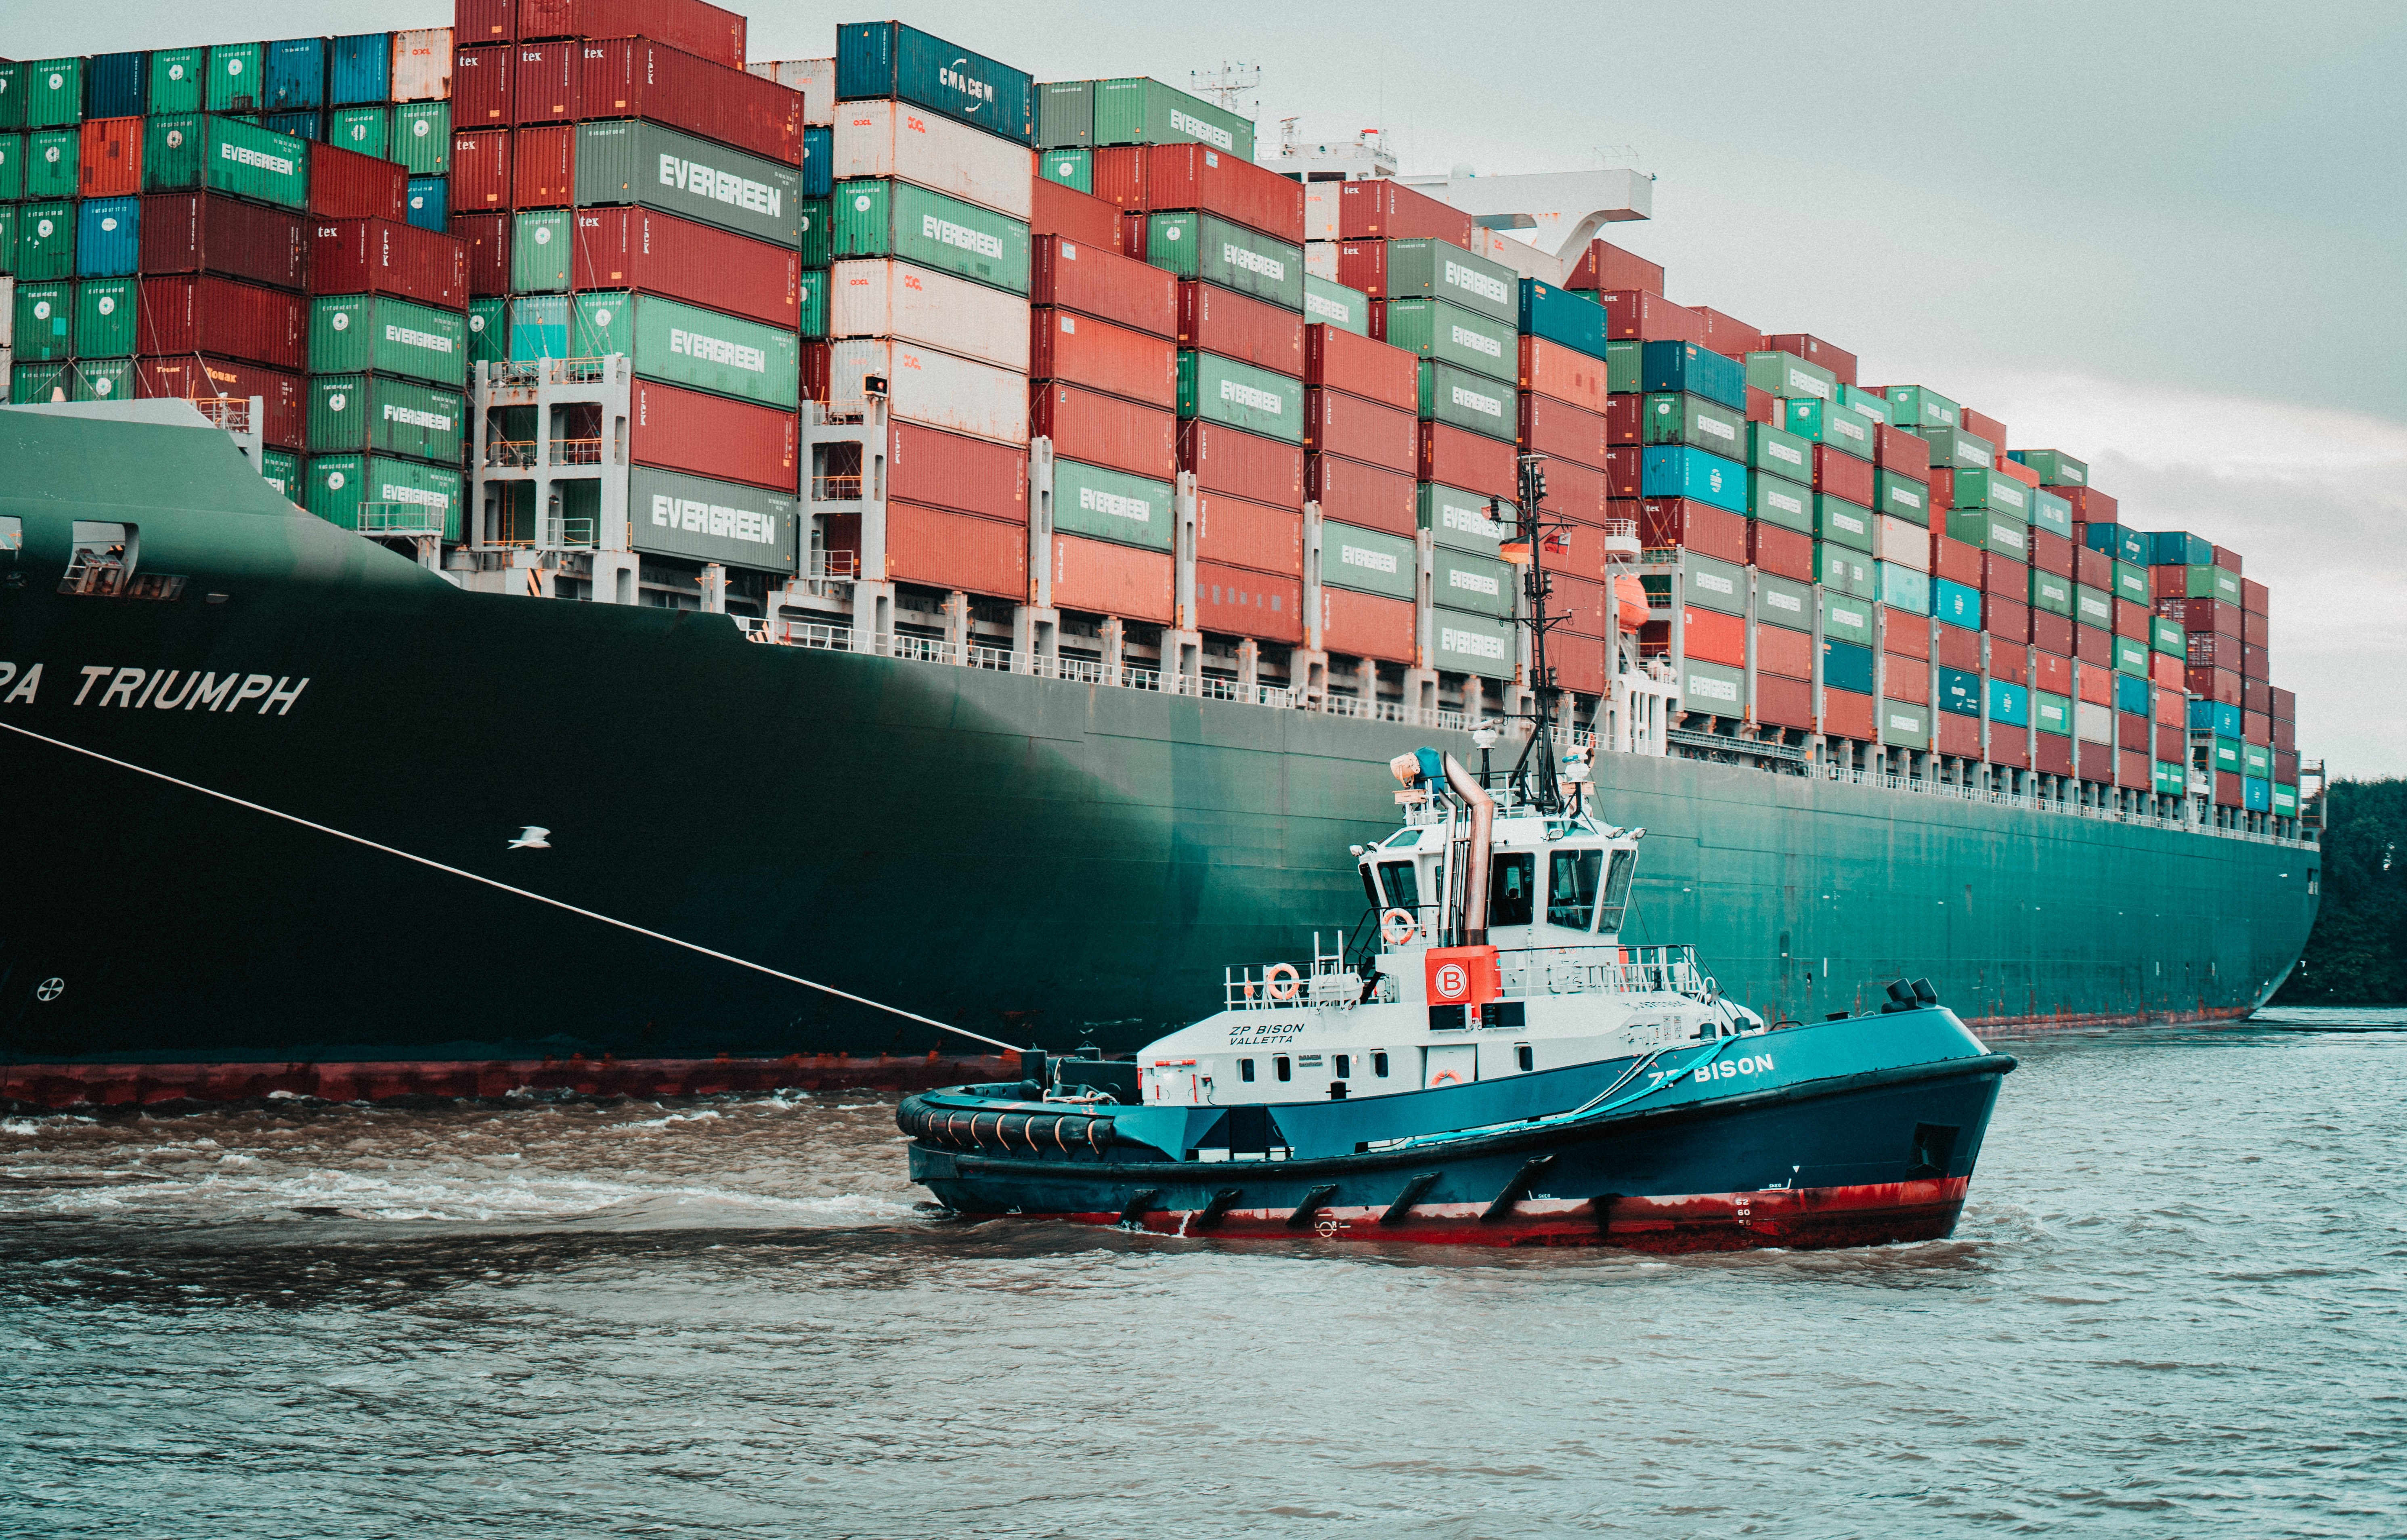 Das Bild zeigt die Fotografie eines sehr großen Frachtschiffes mit vielen Frachtcontainern, das von einem Schlepperboot in den Hafen gezogen wird.